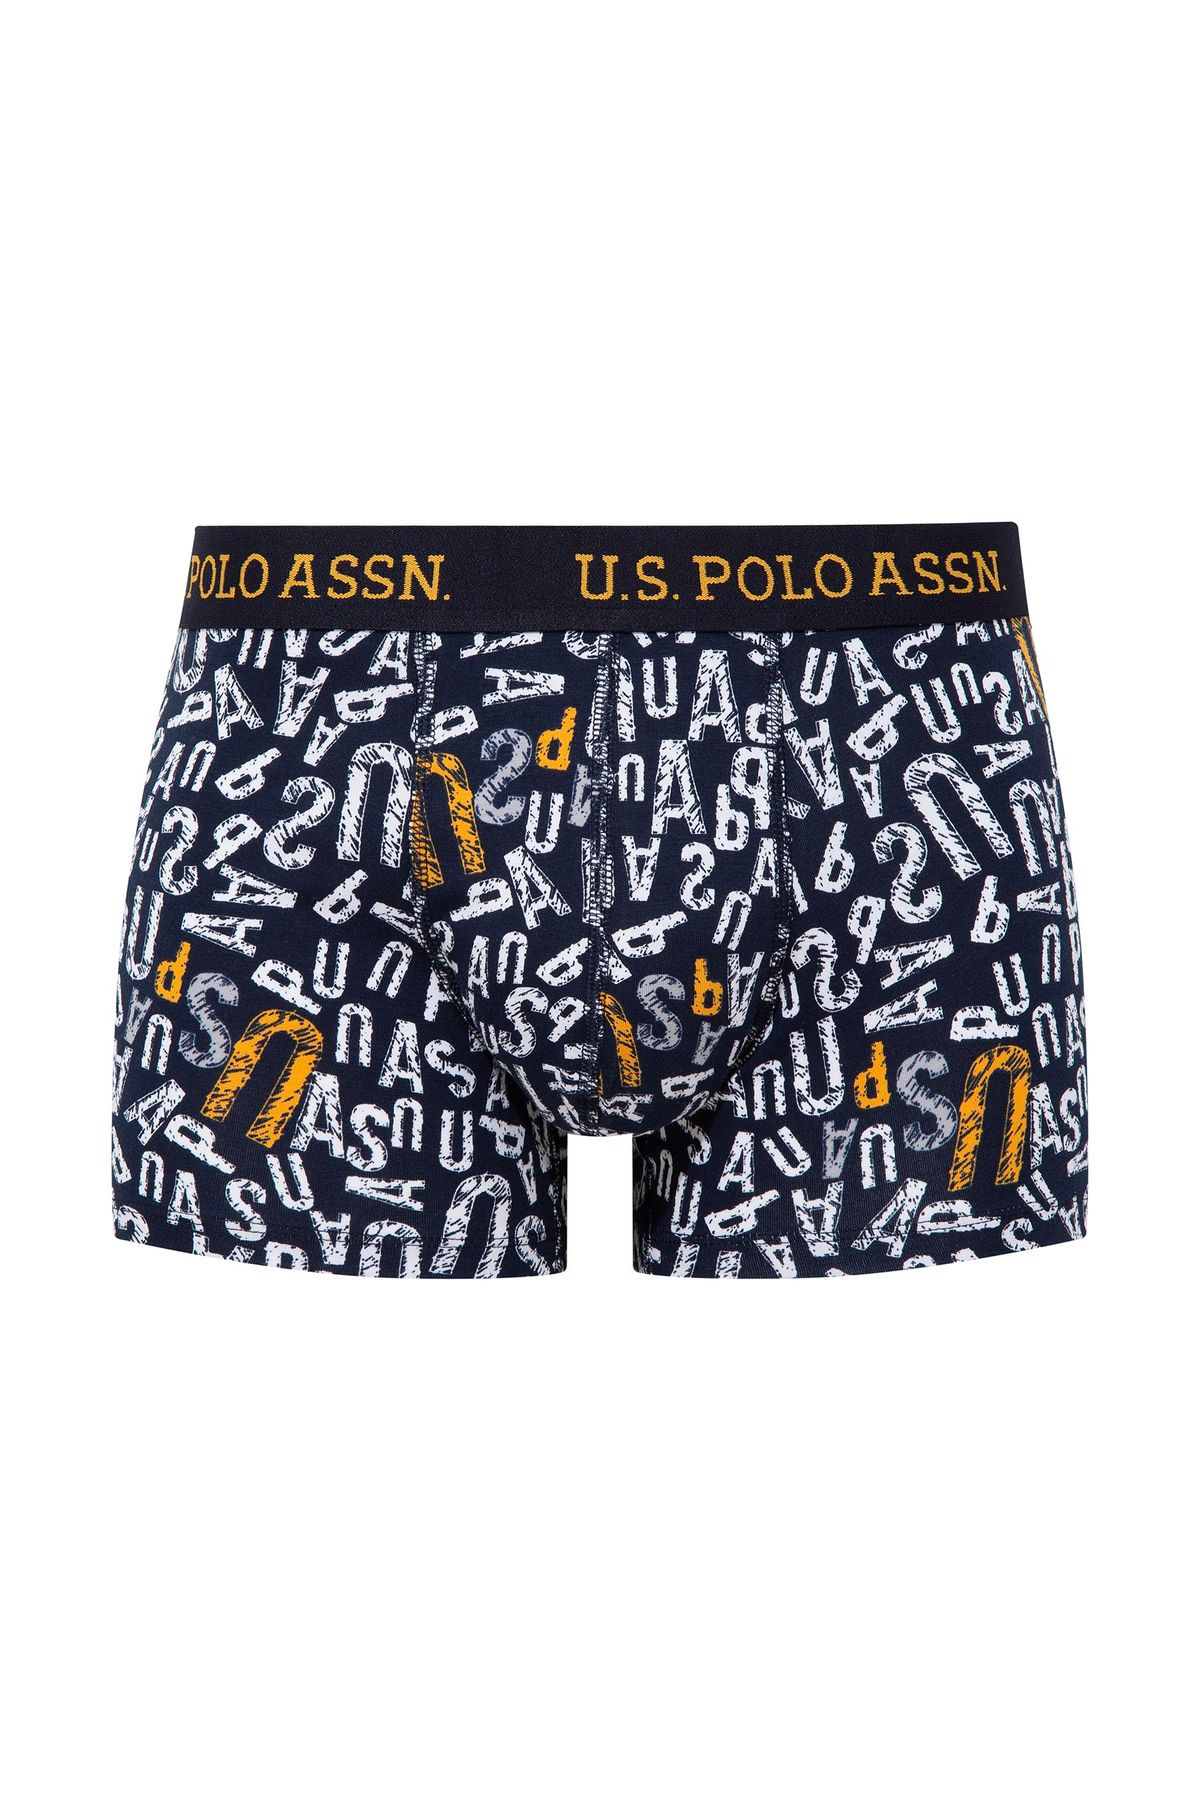 U.S. Polo Assn. Erkek Sarı & Lacivert 3'lü Boxer